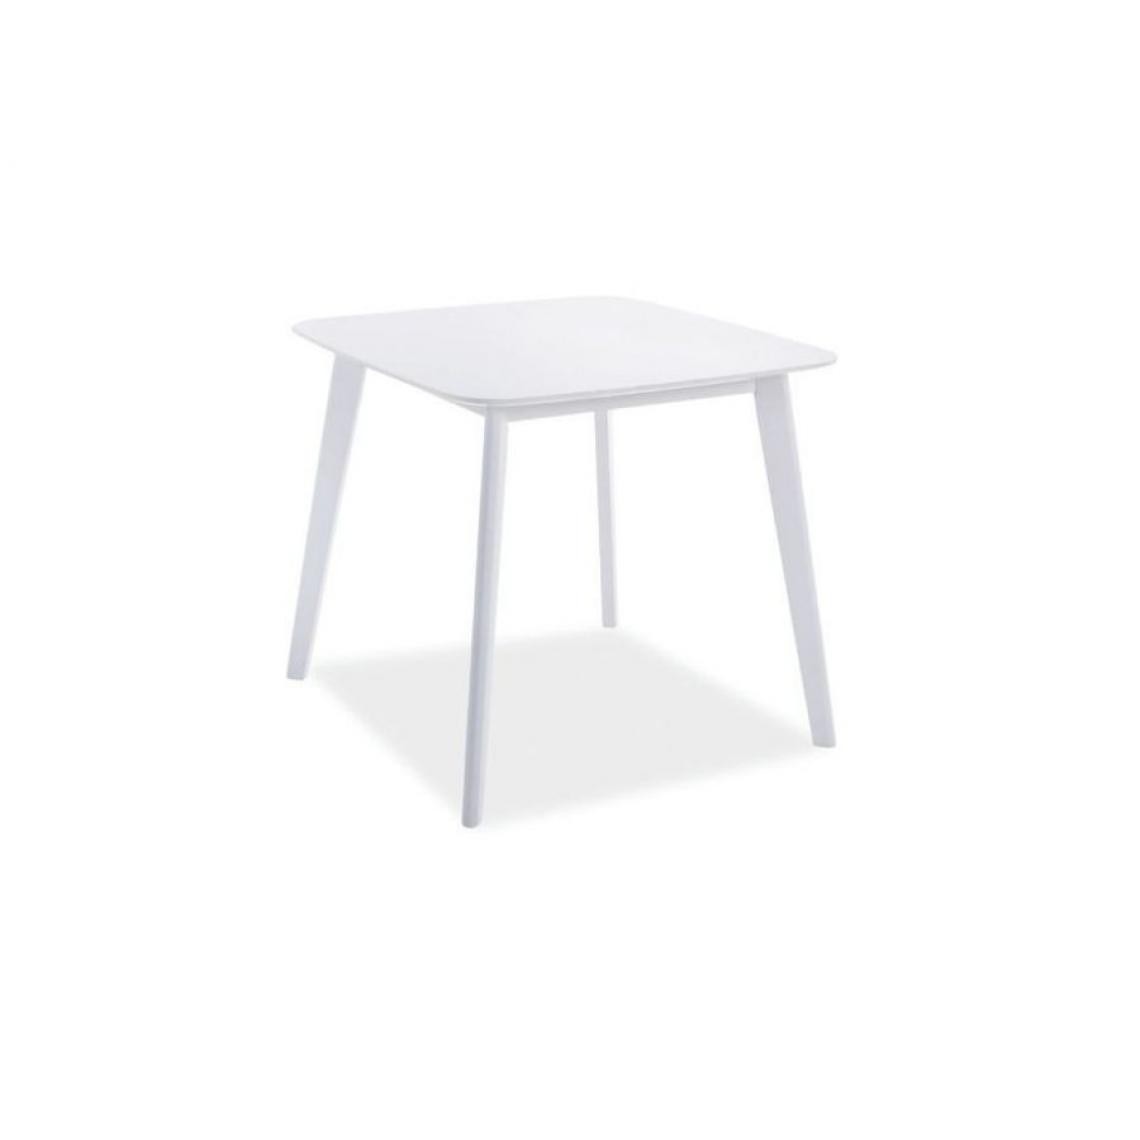 Hucoco - SIGLA - Petite table carrée salle à manger salon - 80x80x75 cm - Pieds en bois - Plateau en bois MDF - Table fixe - Blanc - Tables à manger